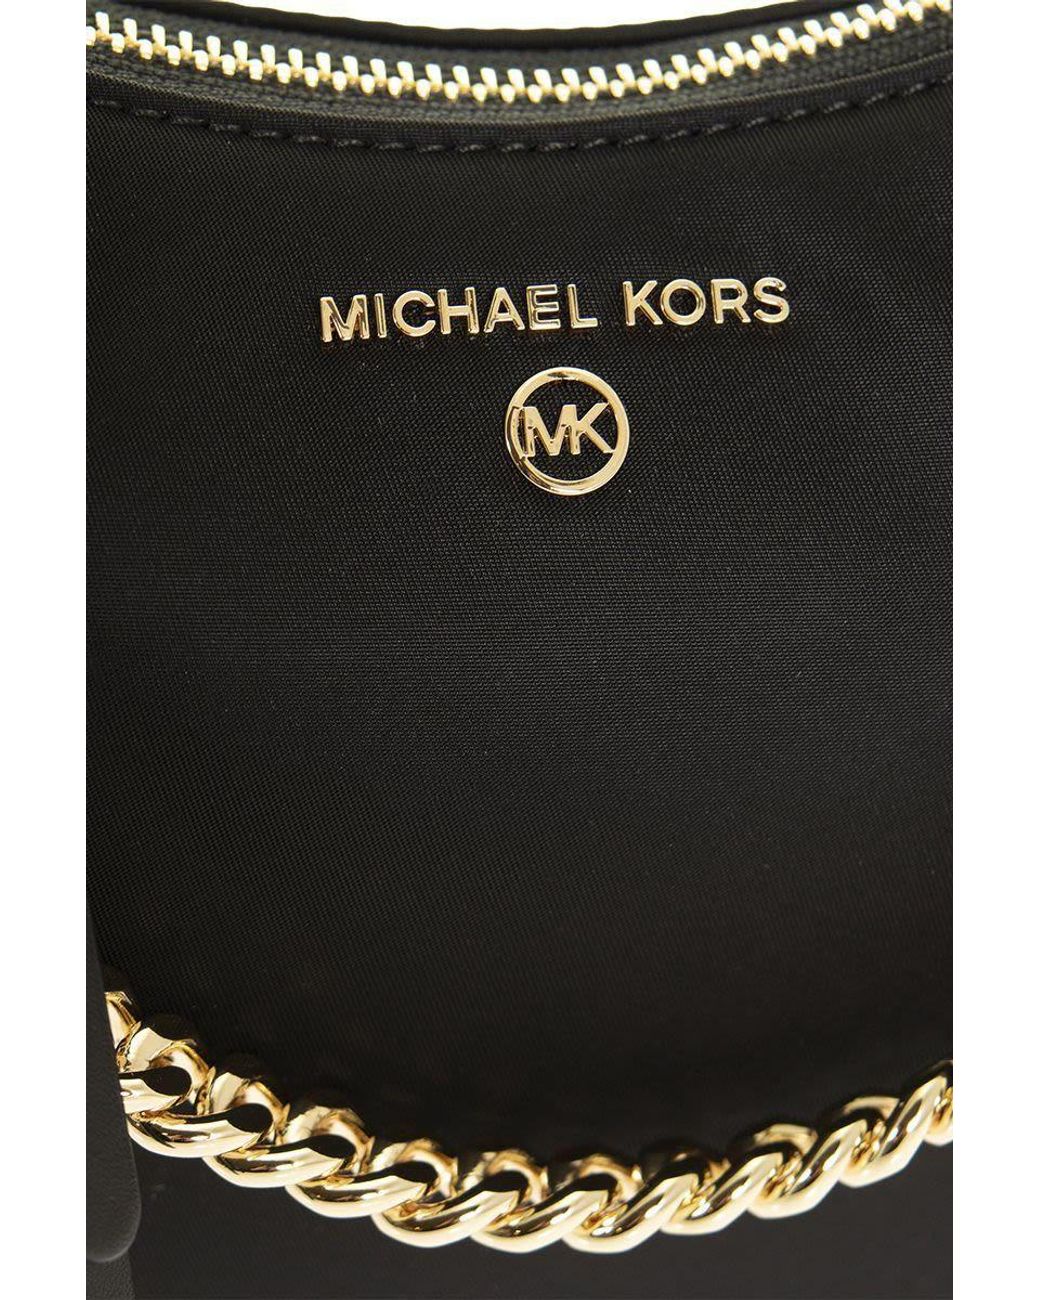 Michael Kors Medium Jet Set Charm Shoulder Bag With Logo in Black | Lyst